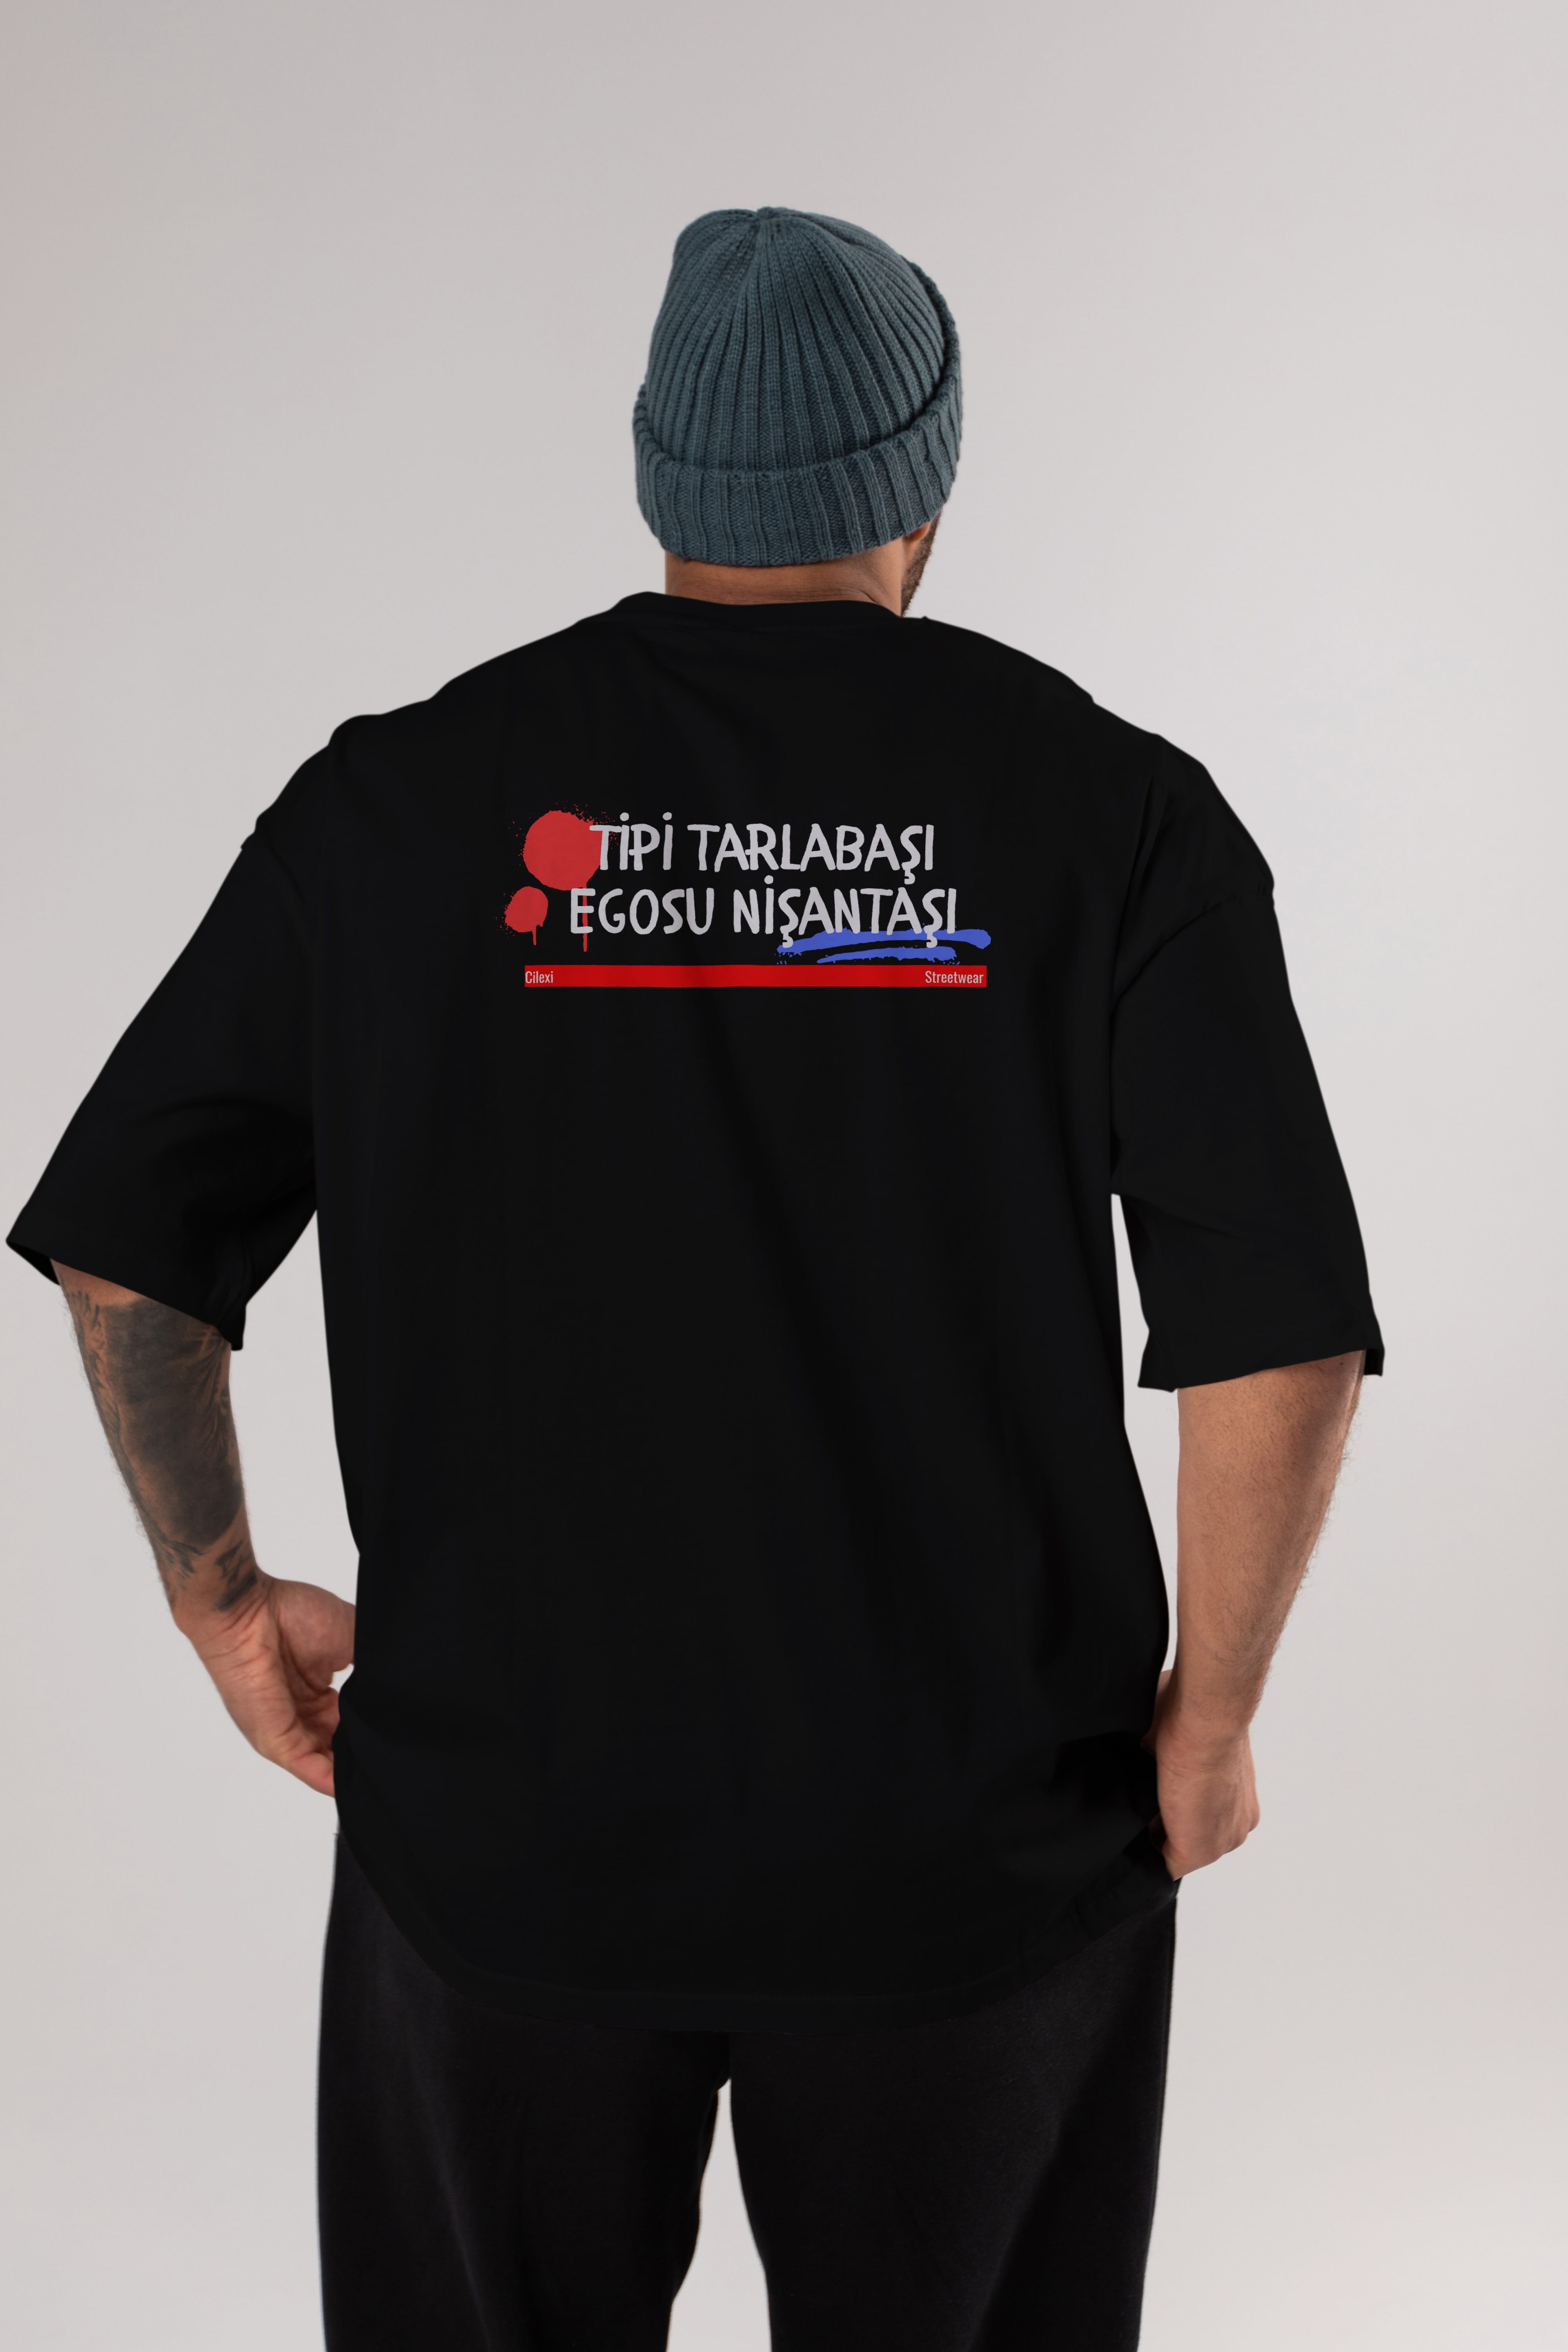 Tipi Tarlabaşı , Egosu Nişantaşı Yazılı Arka Baskılı Oversize t-shirt Erkek Kadın Unisex